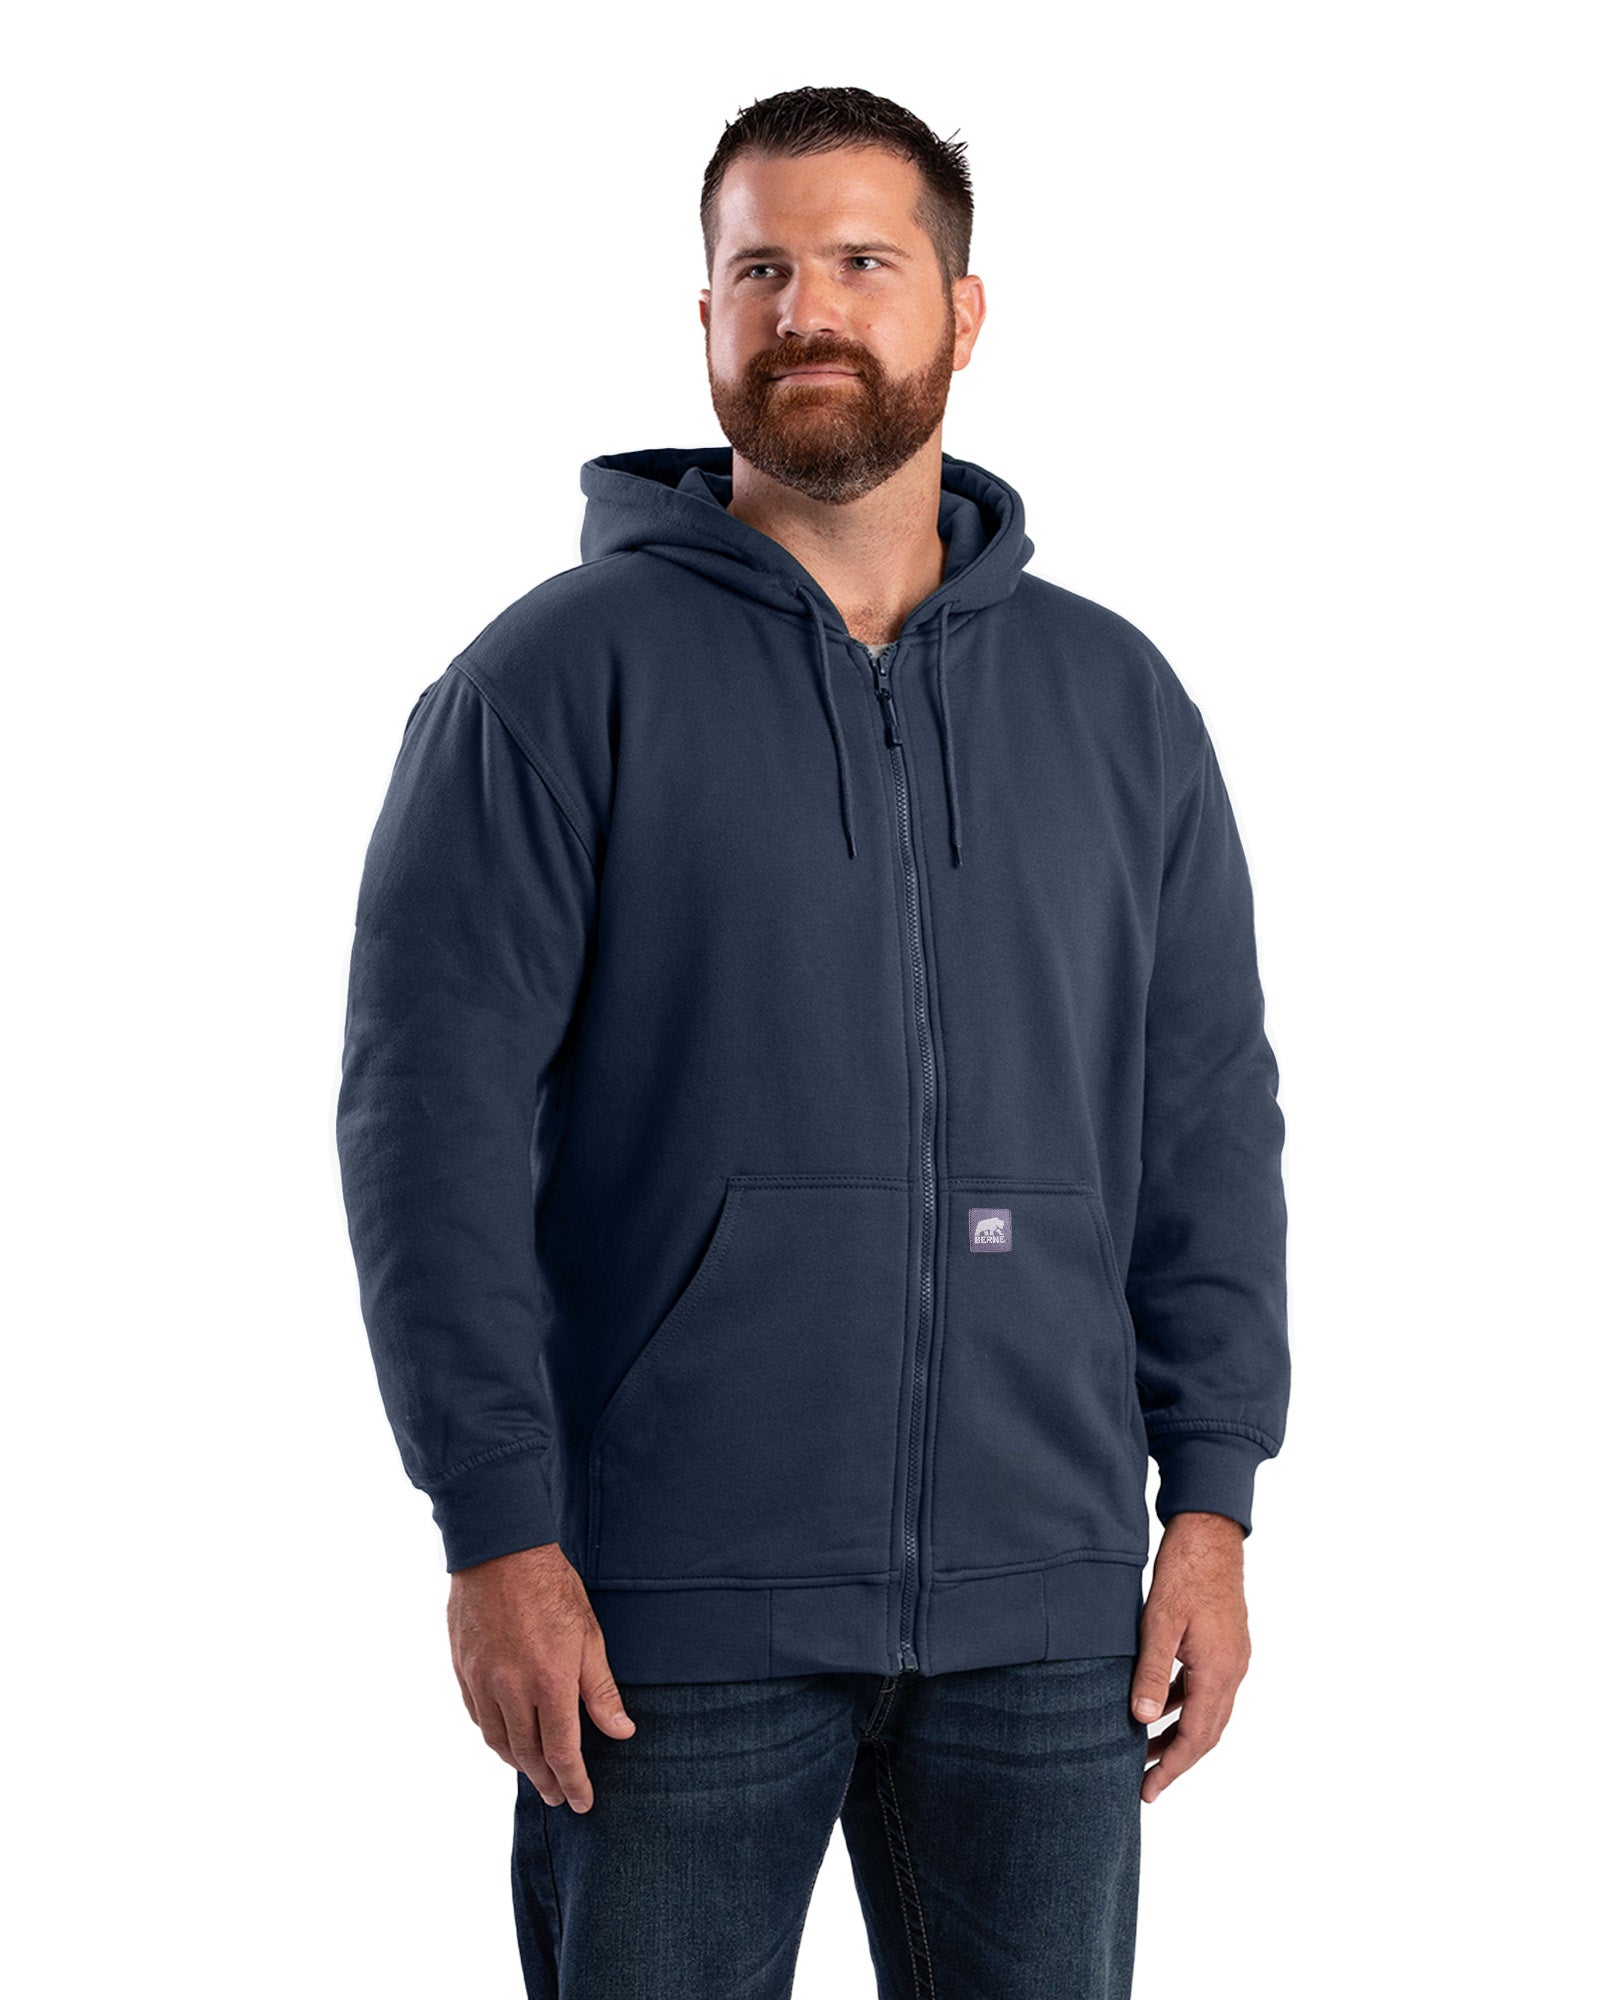 Berne Heritage Thermal-Lined Full-Zip Hooded Sweatshirt - Tall - Mens